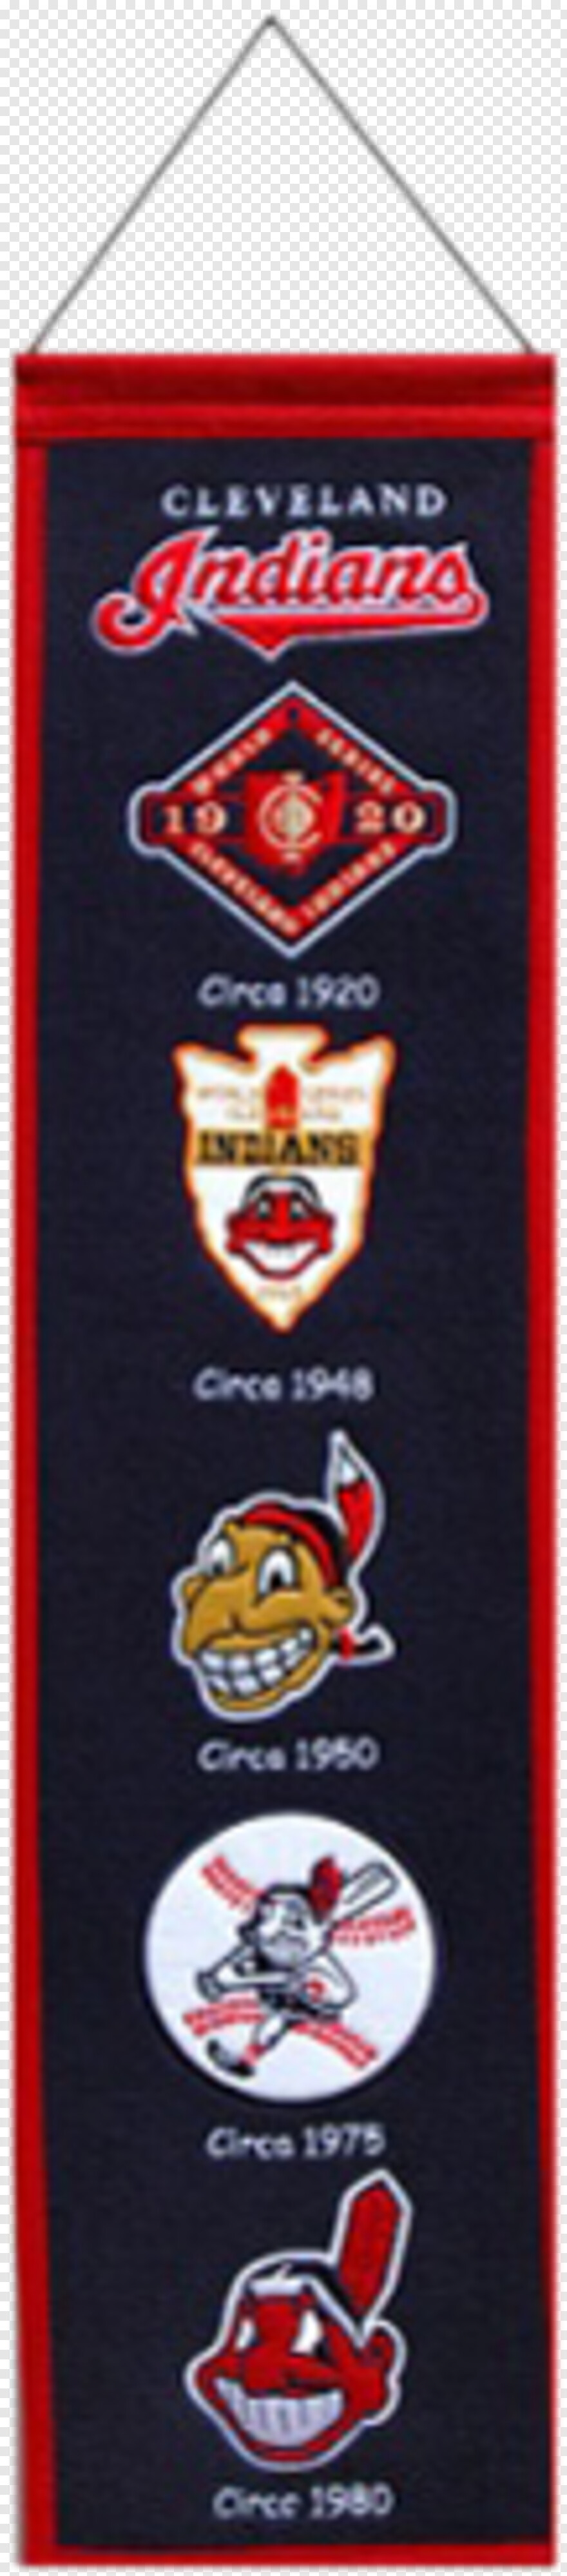 cleveland-indians-logo # 408379